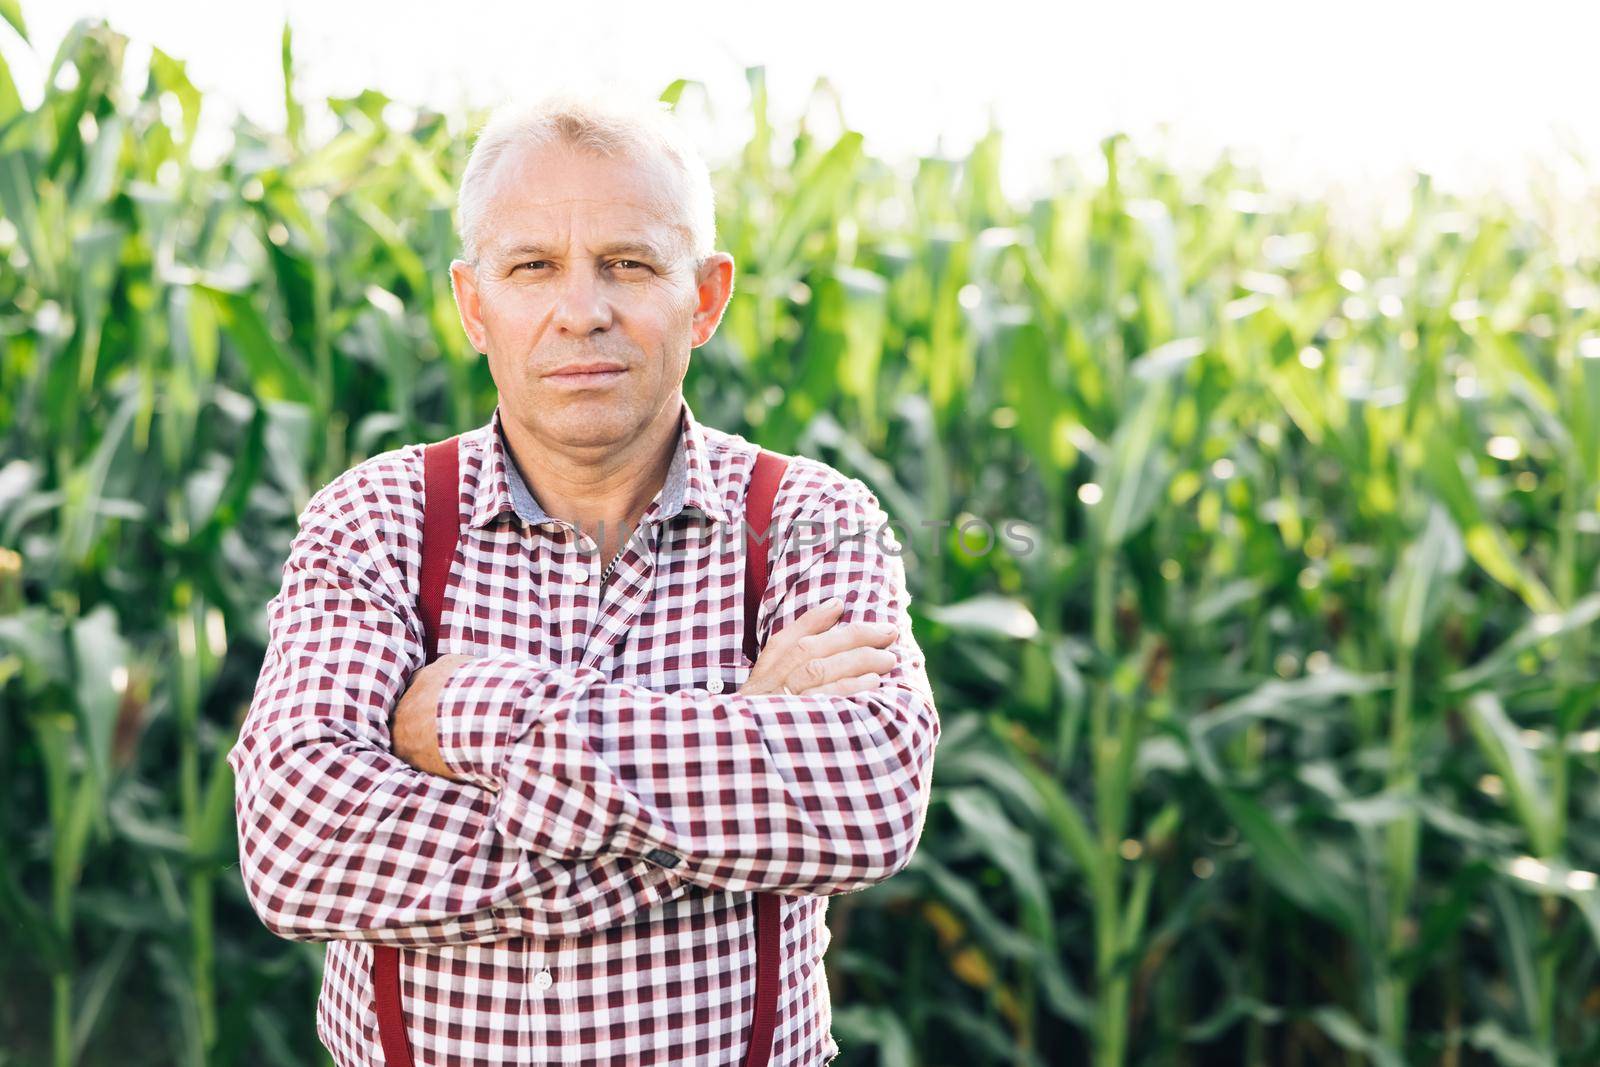 Portrait Caucasian Farmer Man in Plaid Shirt Looking in Corn Field. Farmland Sunset Landscape Agriculture. Portrait Farmer Man Standing in Corn Field. Farm Worker by uflypro